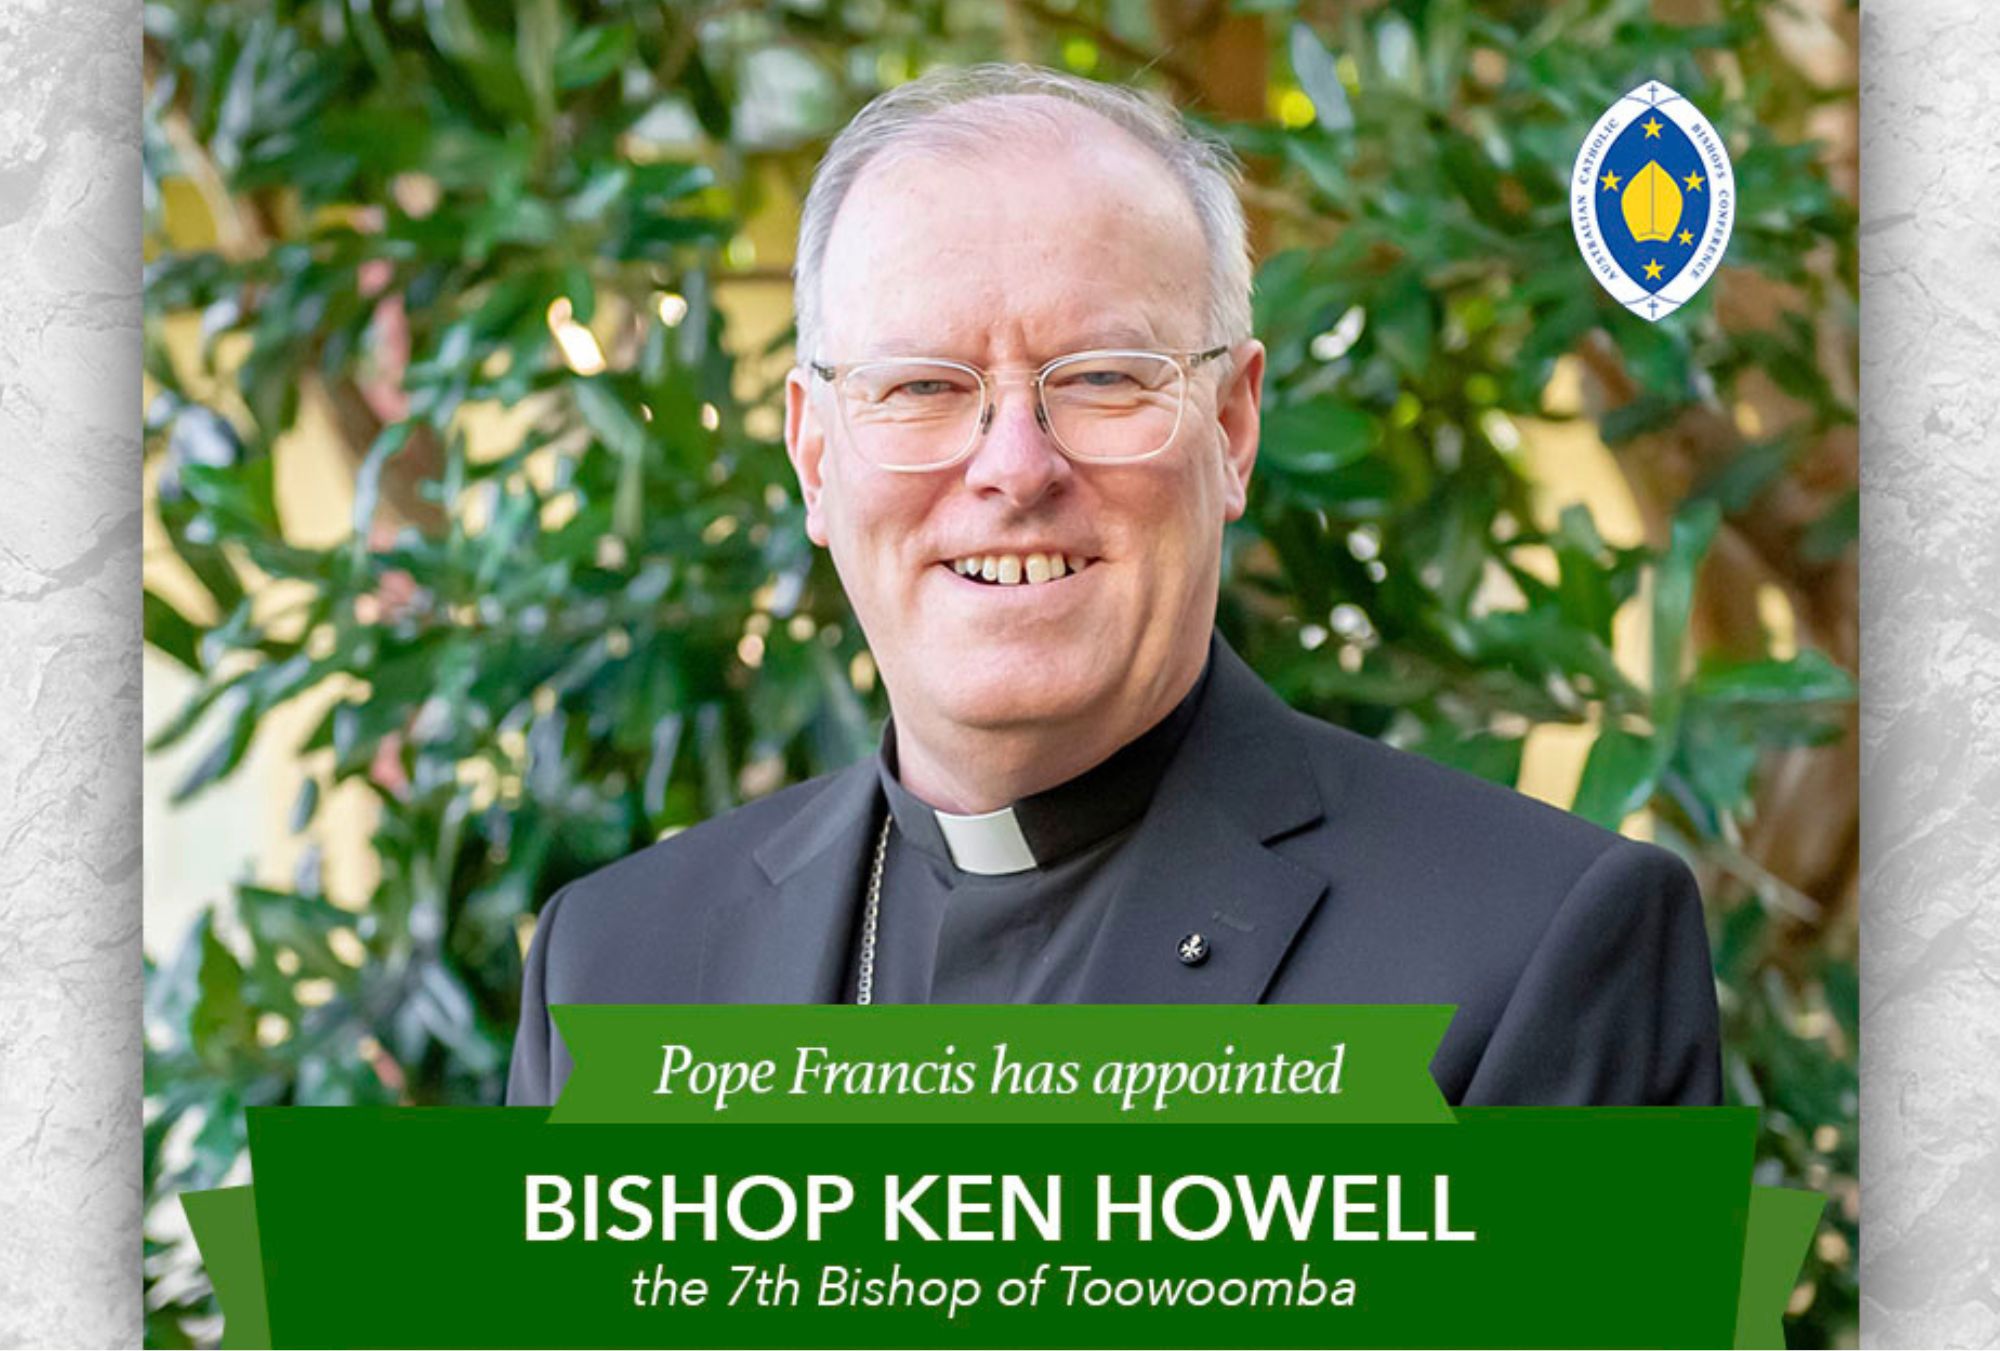 Bishop Ken Howell